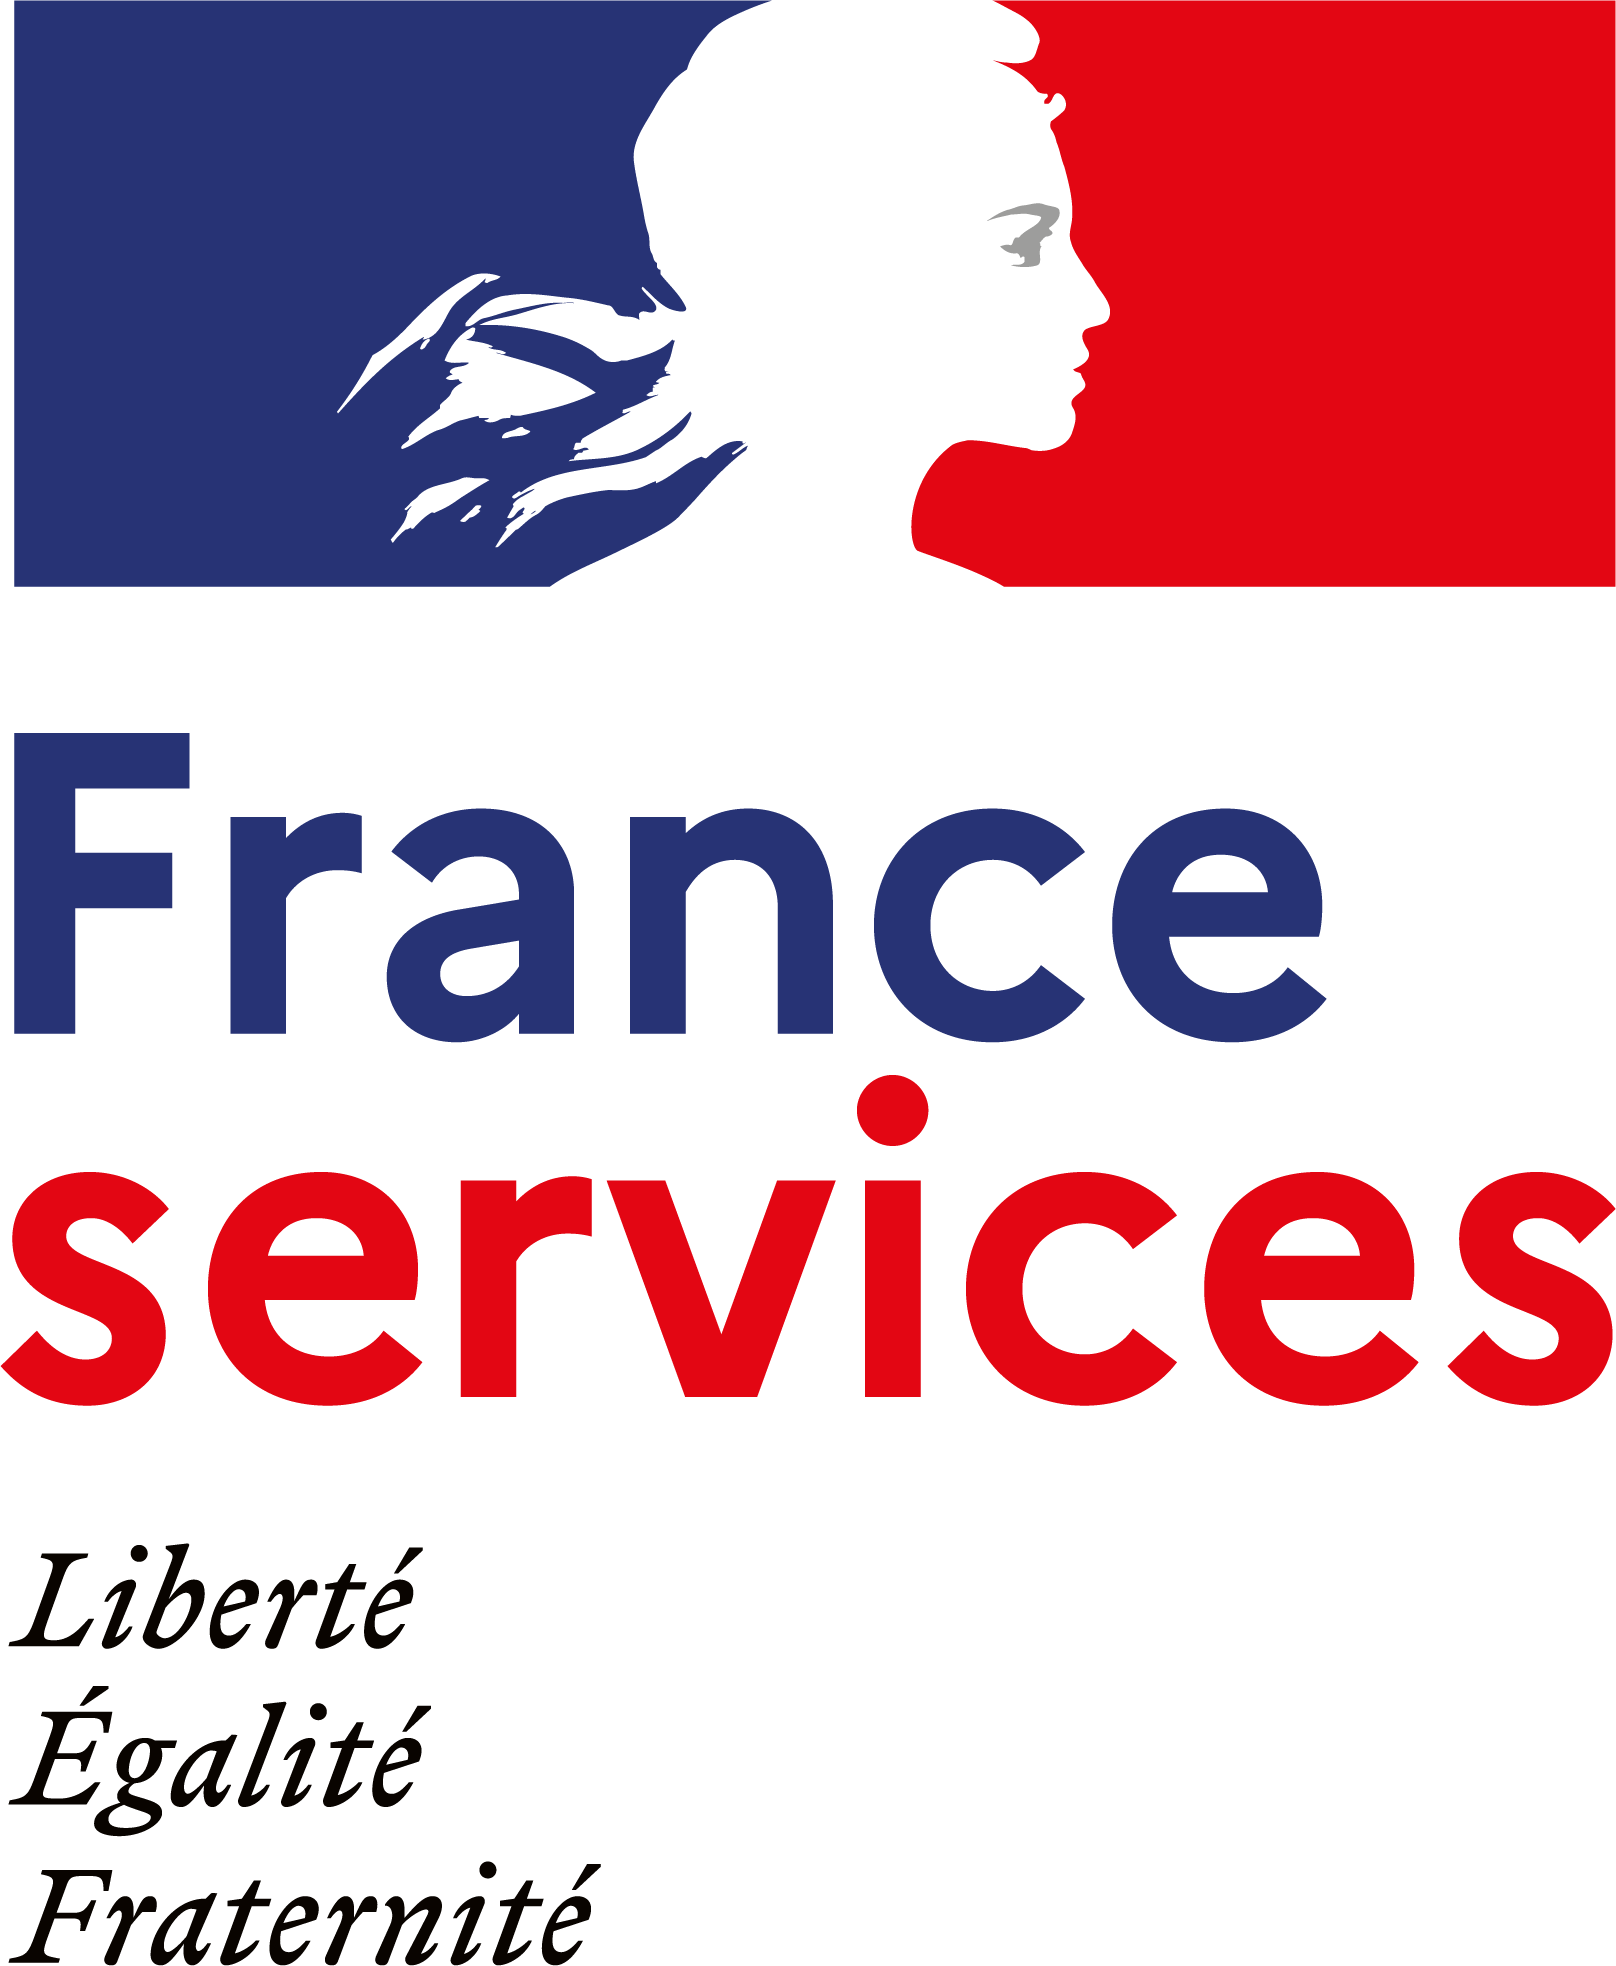 France services : journées portes ouvertes